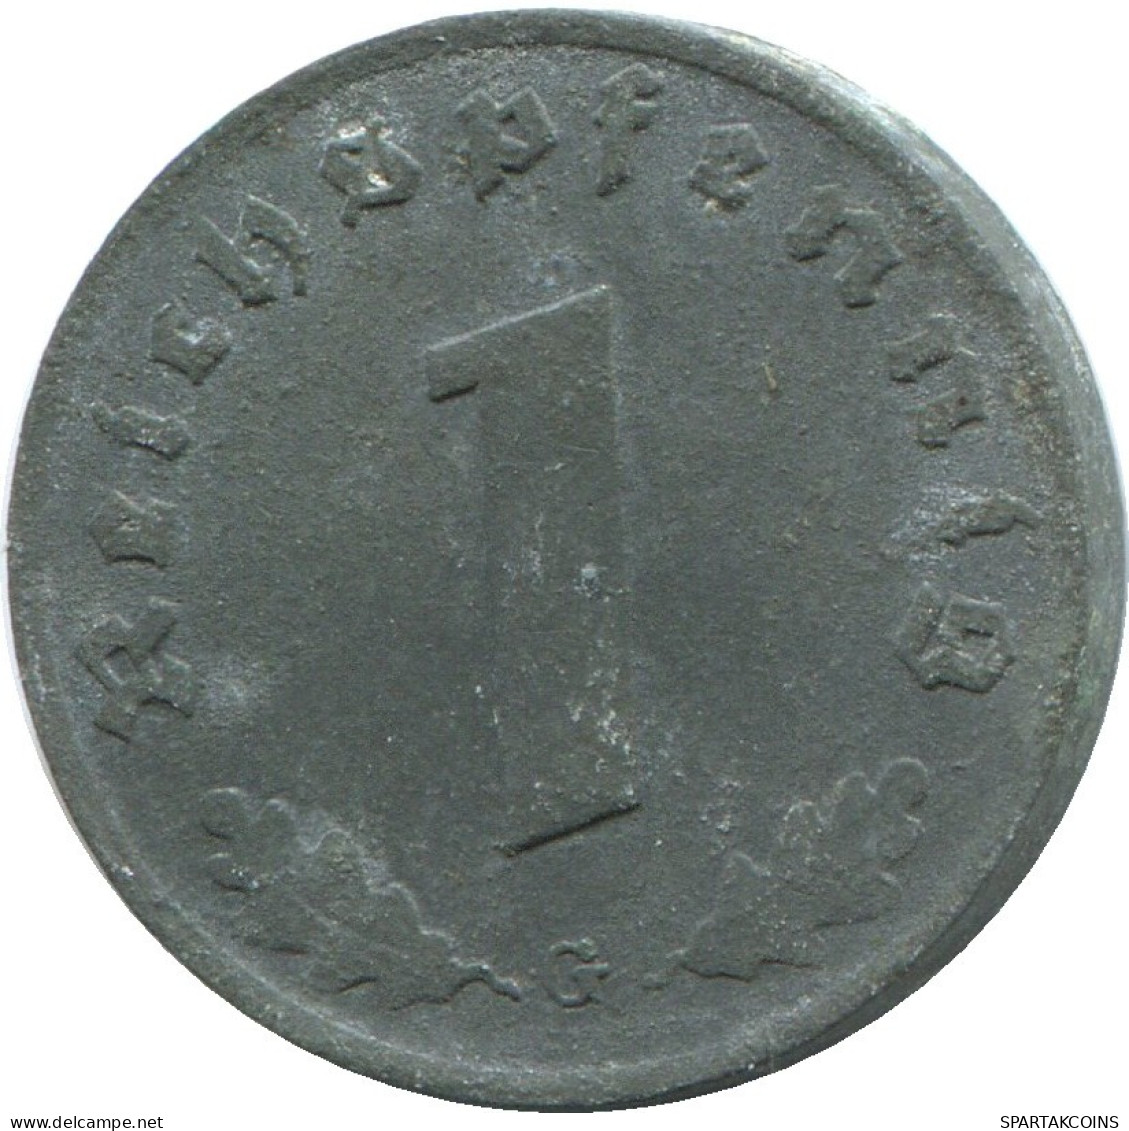 1 REICHSPFENNIG 1942 G GERMANY Coin #DE10425.5.U.A - 1 Reichspfennig